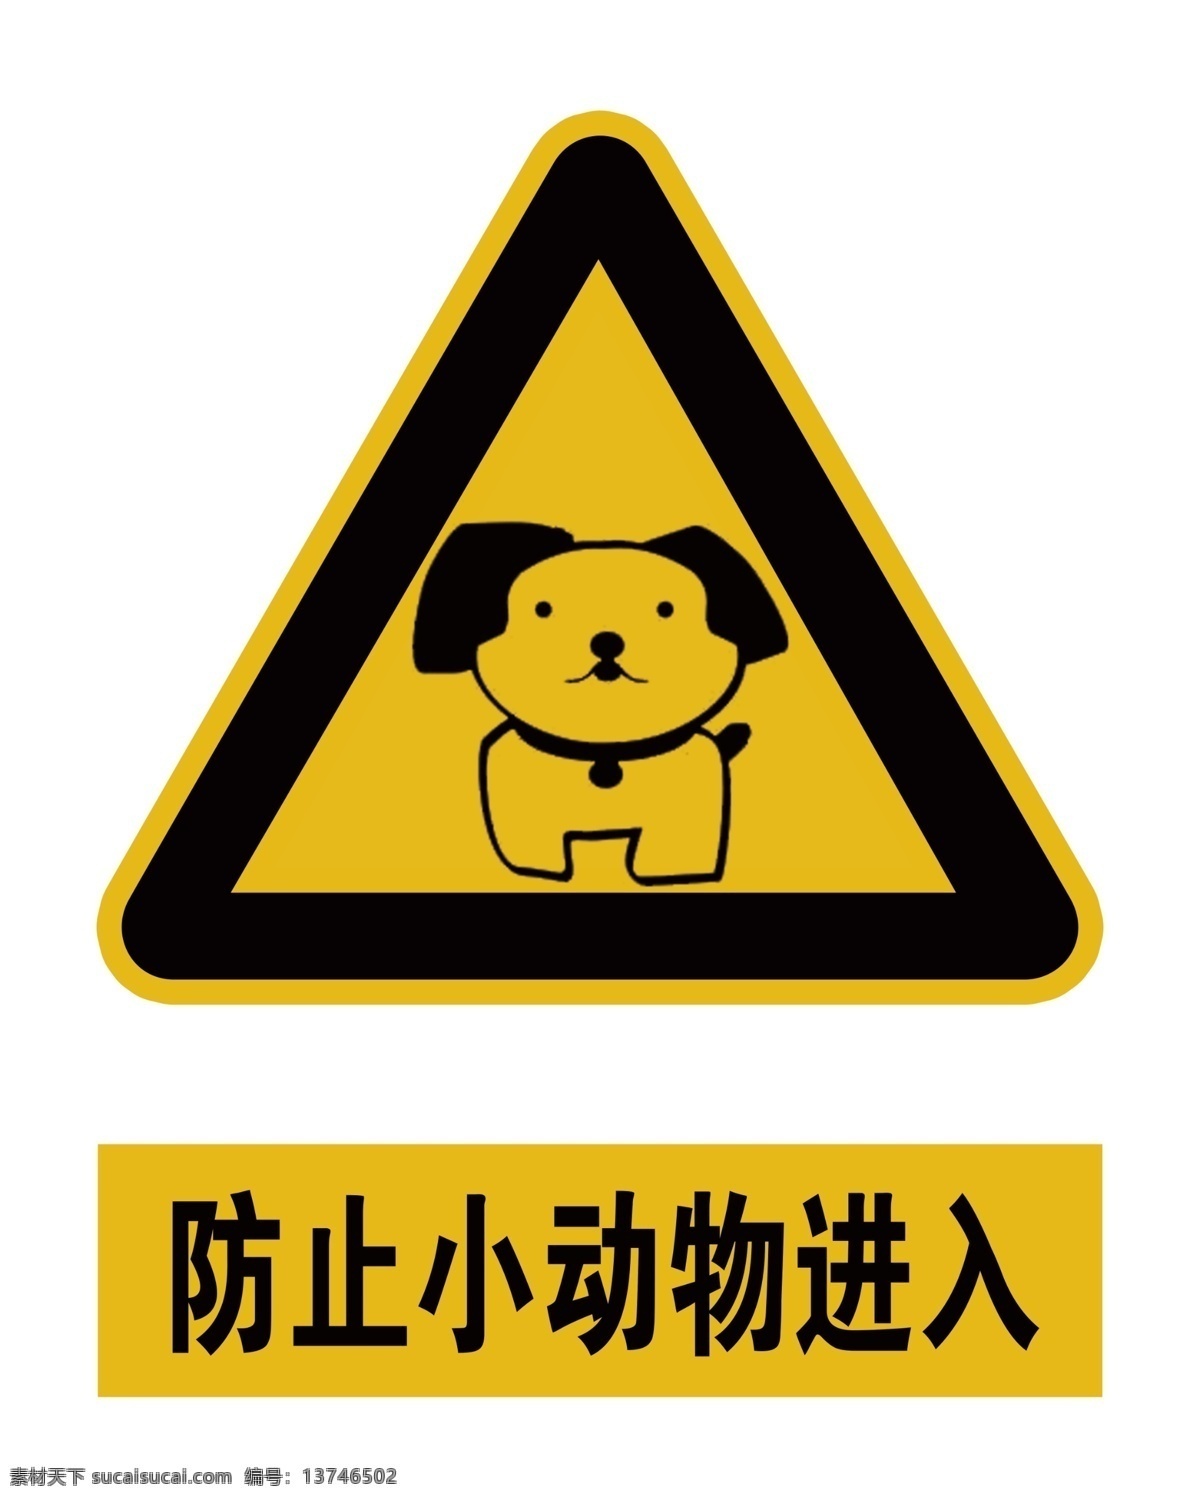 防止 小 动物 进入 防止小动物 动物进入标 三角标 黄色标 标志图标 公共标识标志